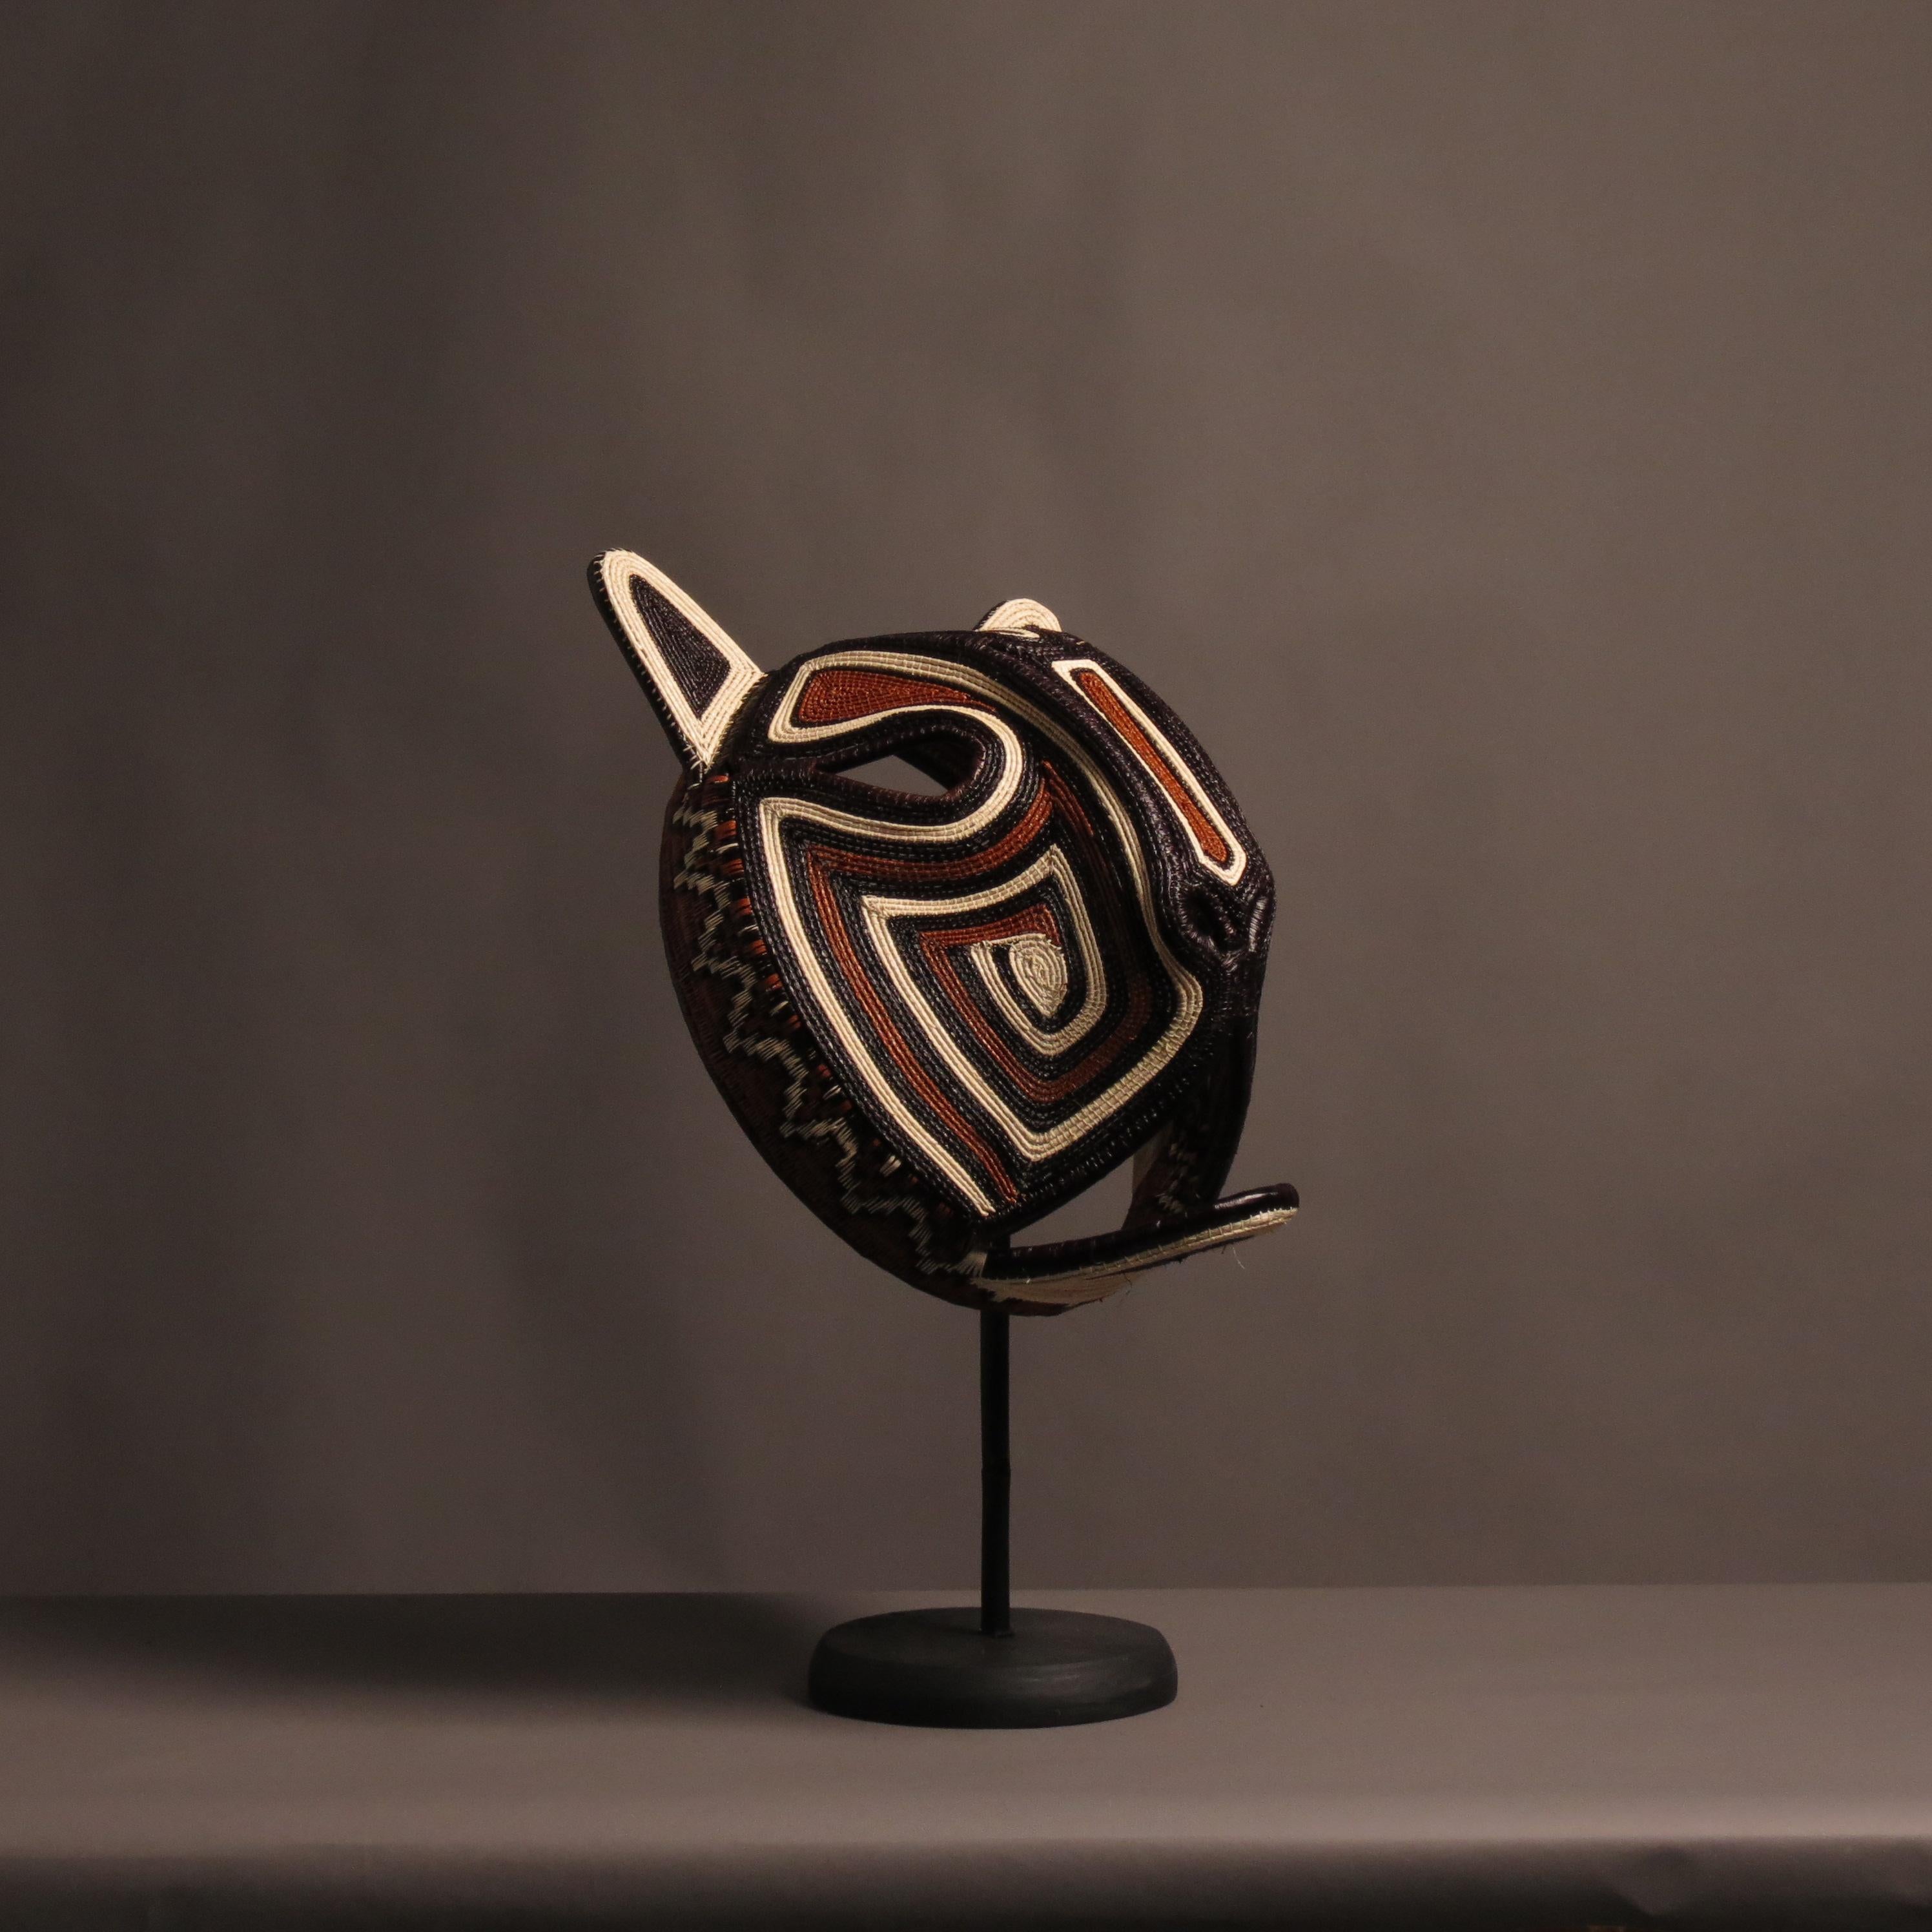 Diese Maske ist ein außergewöhnliches Kunst- und Dekorationsobjekt, das aus dem schamanischen Glauben und den Ritualen der mittelamerikanischen Stämme stammt.
Die indigenen Völker teilen die Welt in zwei Teile, eine sichtbare und eine unsichtbare